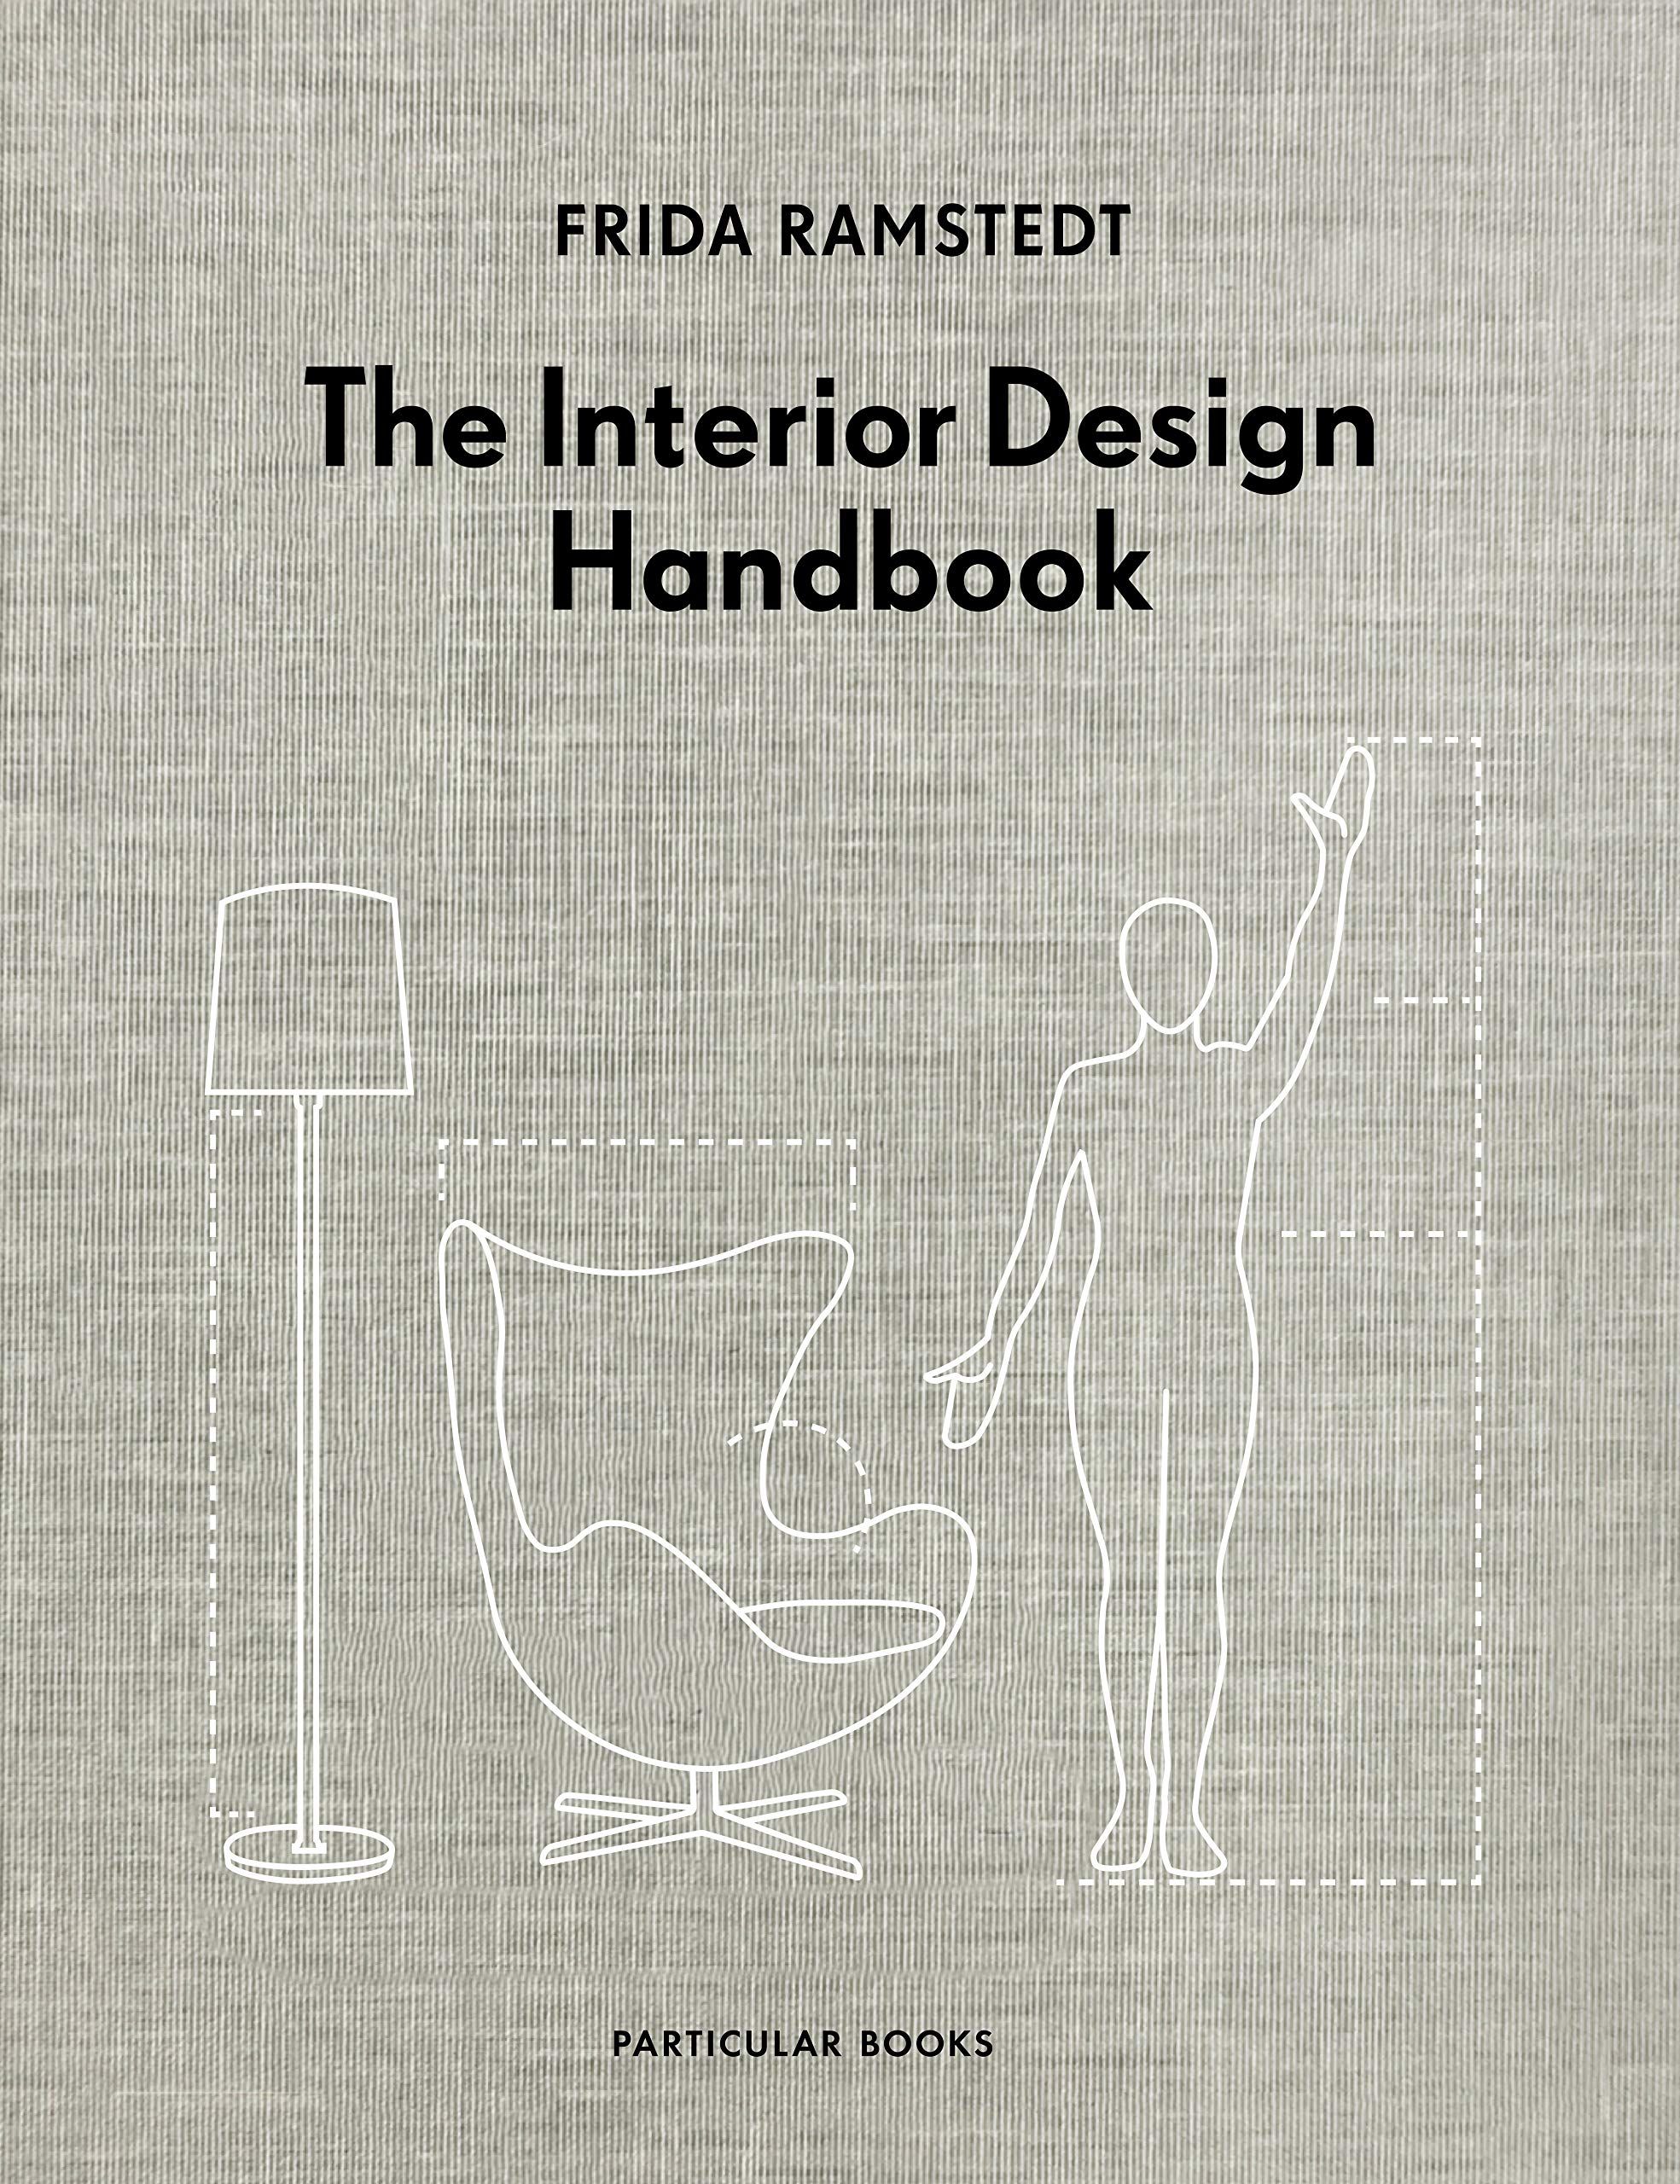 I migliori libri sul design e la sua storia